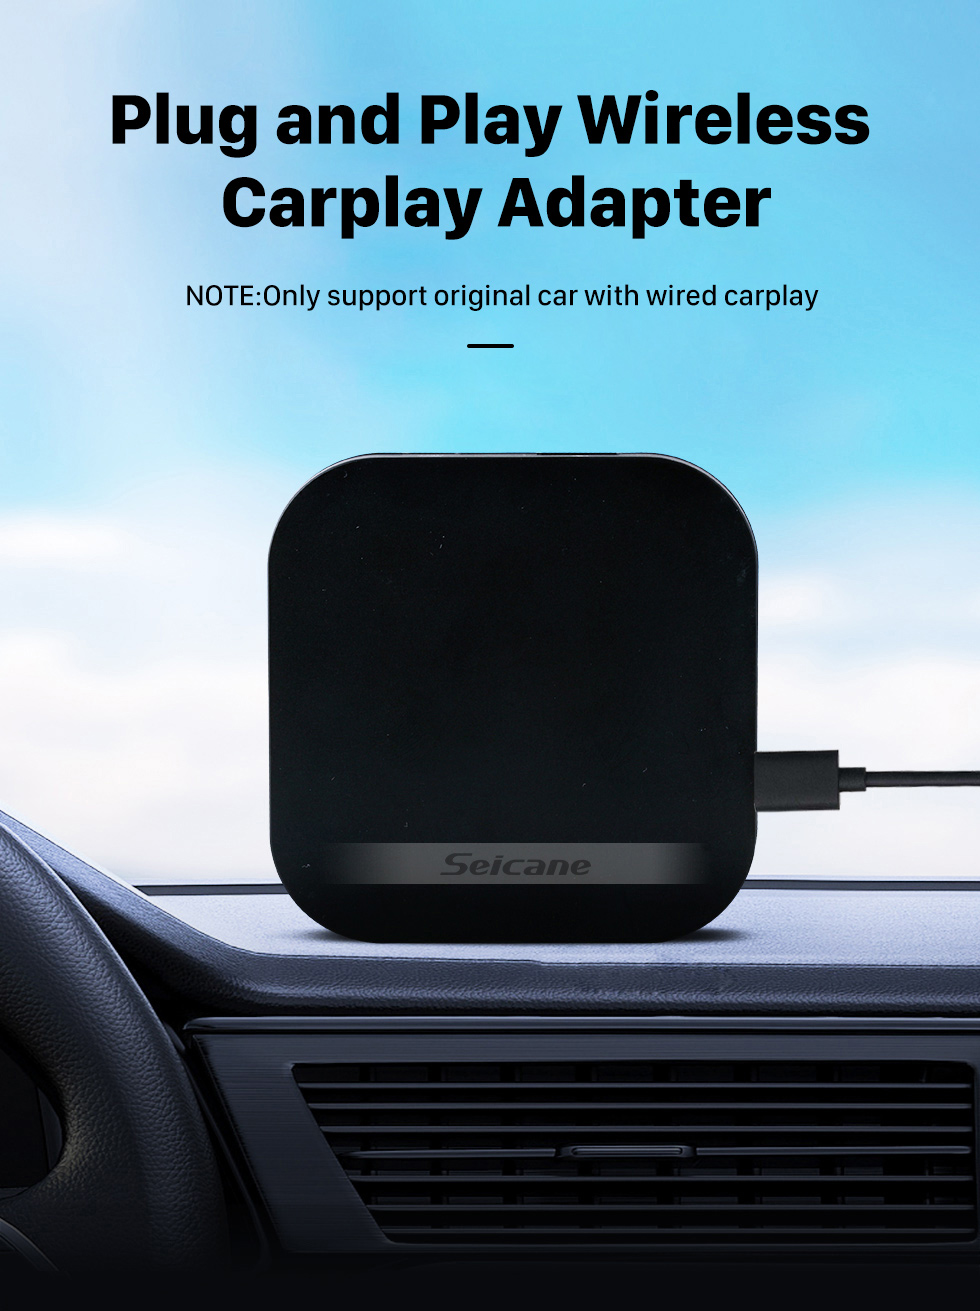 Seicane Adaptador de Carplay sem fio plug and play para suporte de carplay com fio de fábrica BWM Benz Audi VW